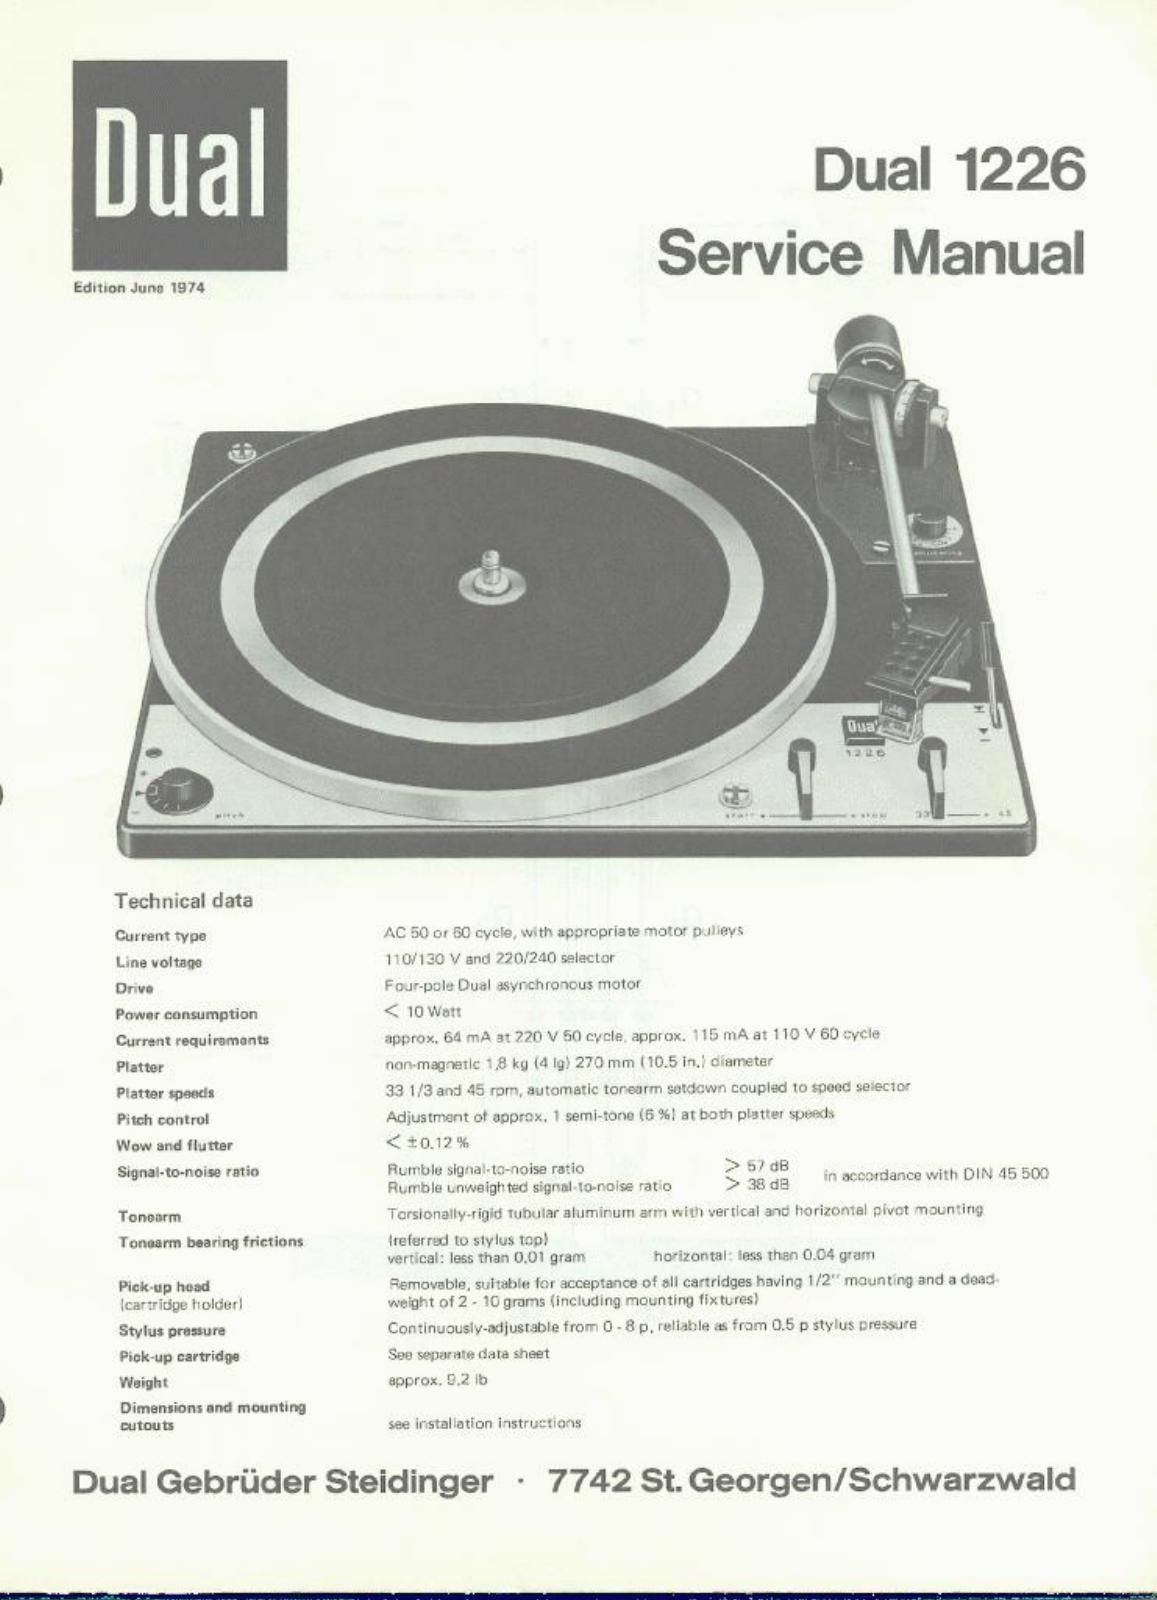 Reinschauen !!! Dual 1226 Service Manual TOP !! 